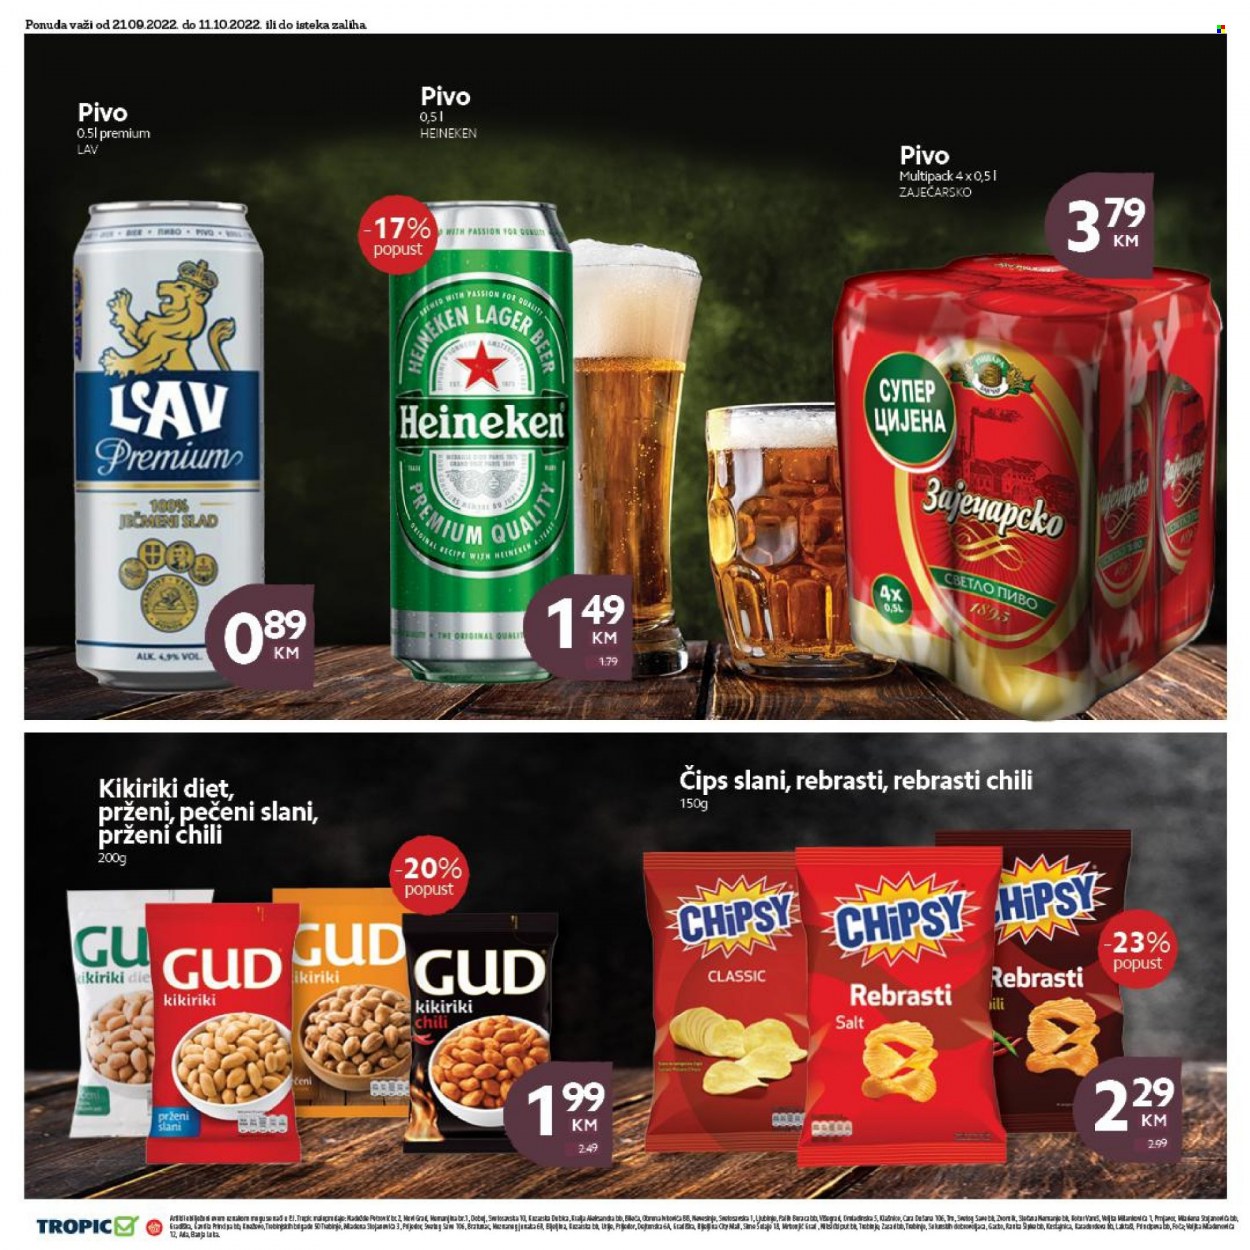 thumbnail - Tropic katalog - 21.09.2022. - 11.10.2022. - Sniženi proizvodi - pivo Heineken, pivo, chips, Chipsy. Stranica 26.